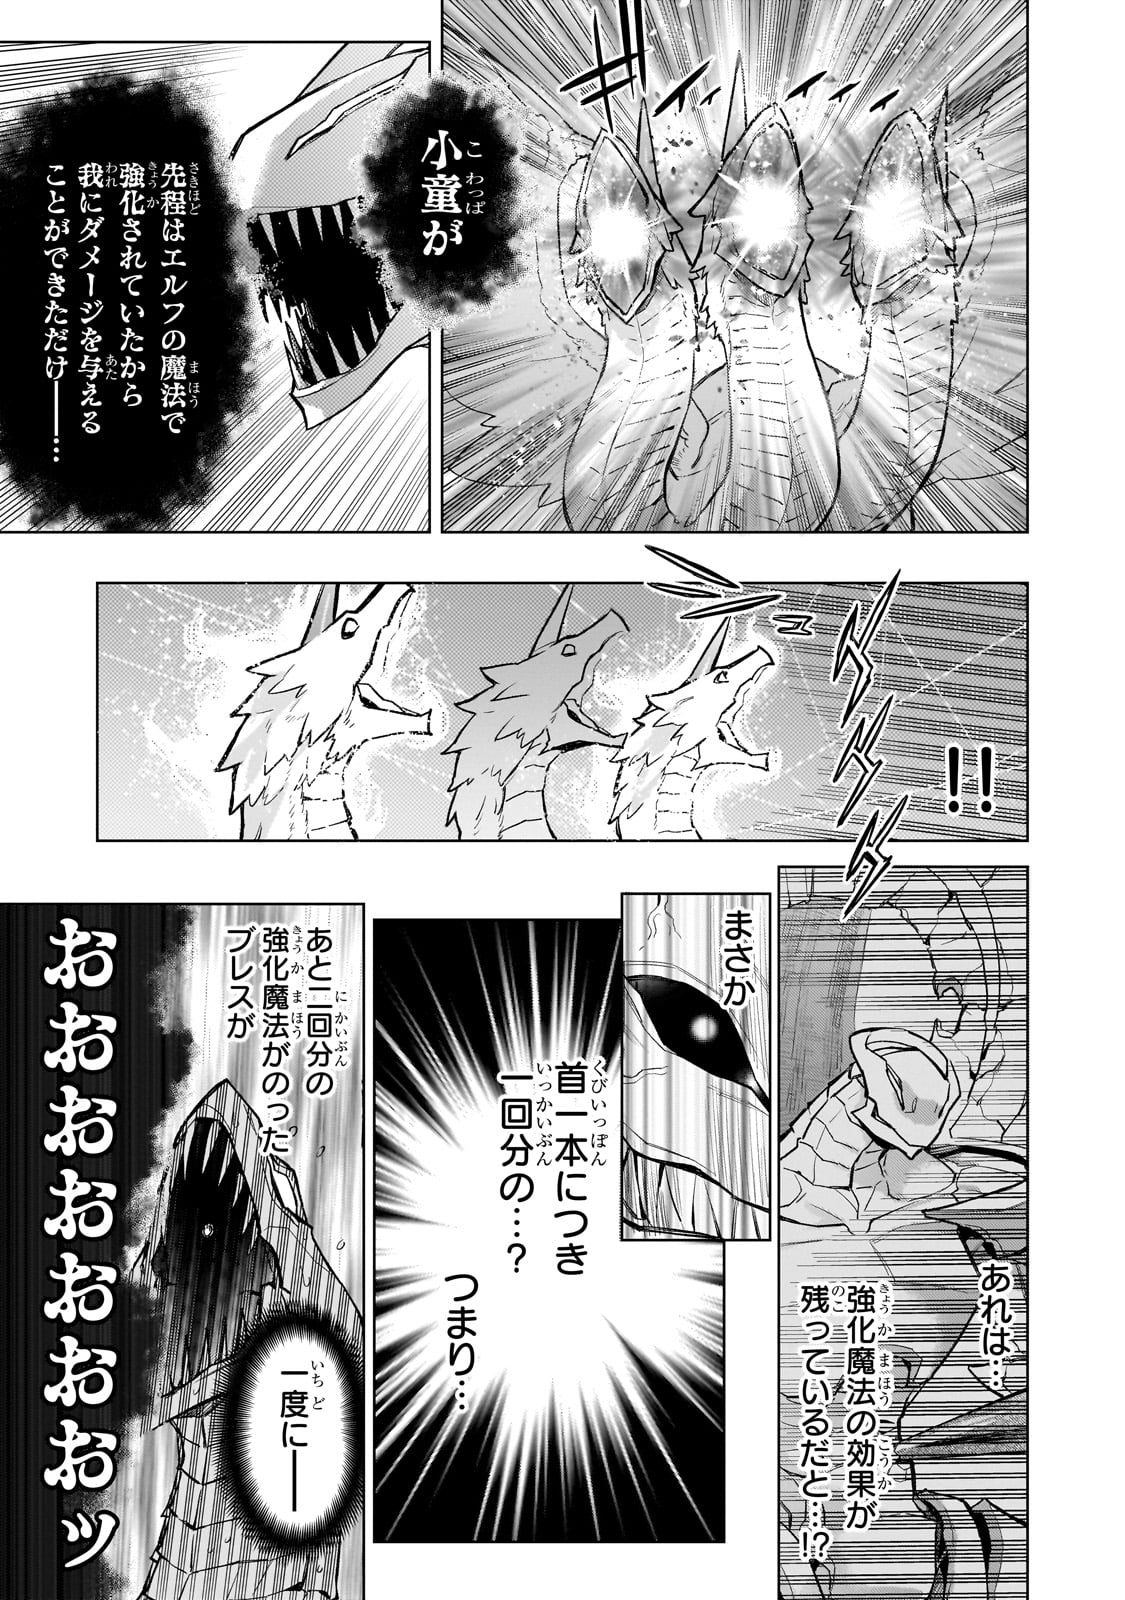 Kuro no Shoukanshi - Chapter 136 - Page 13